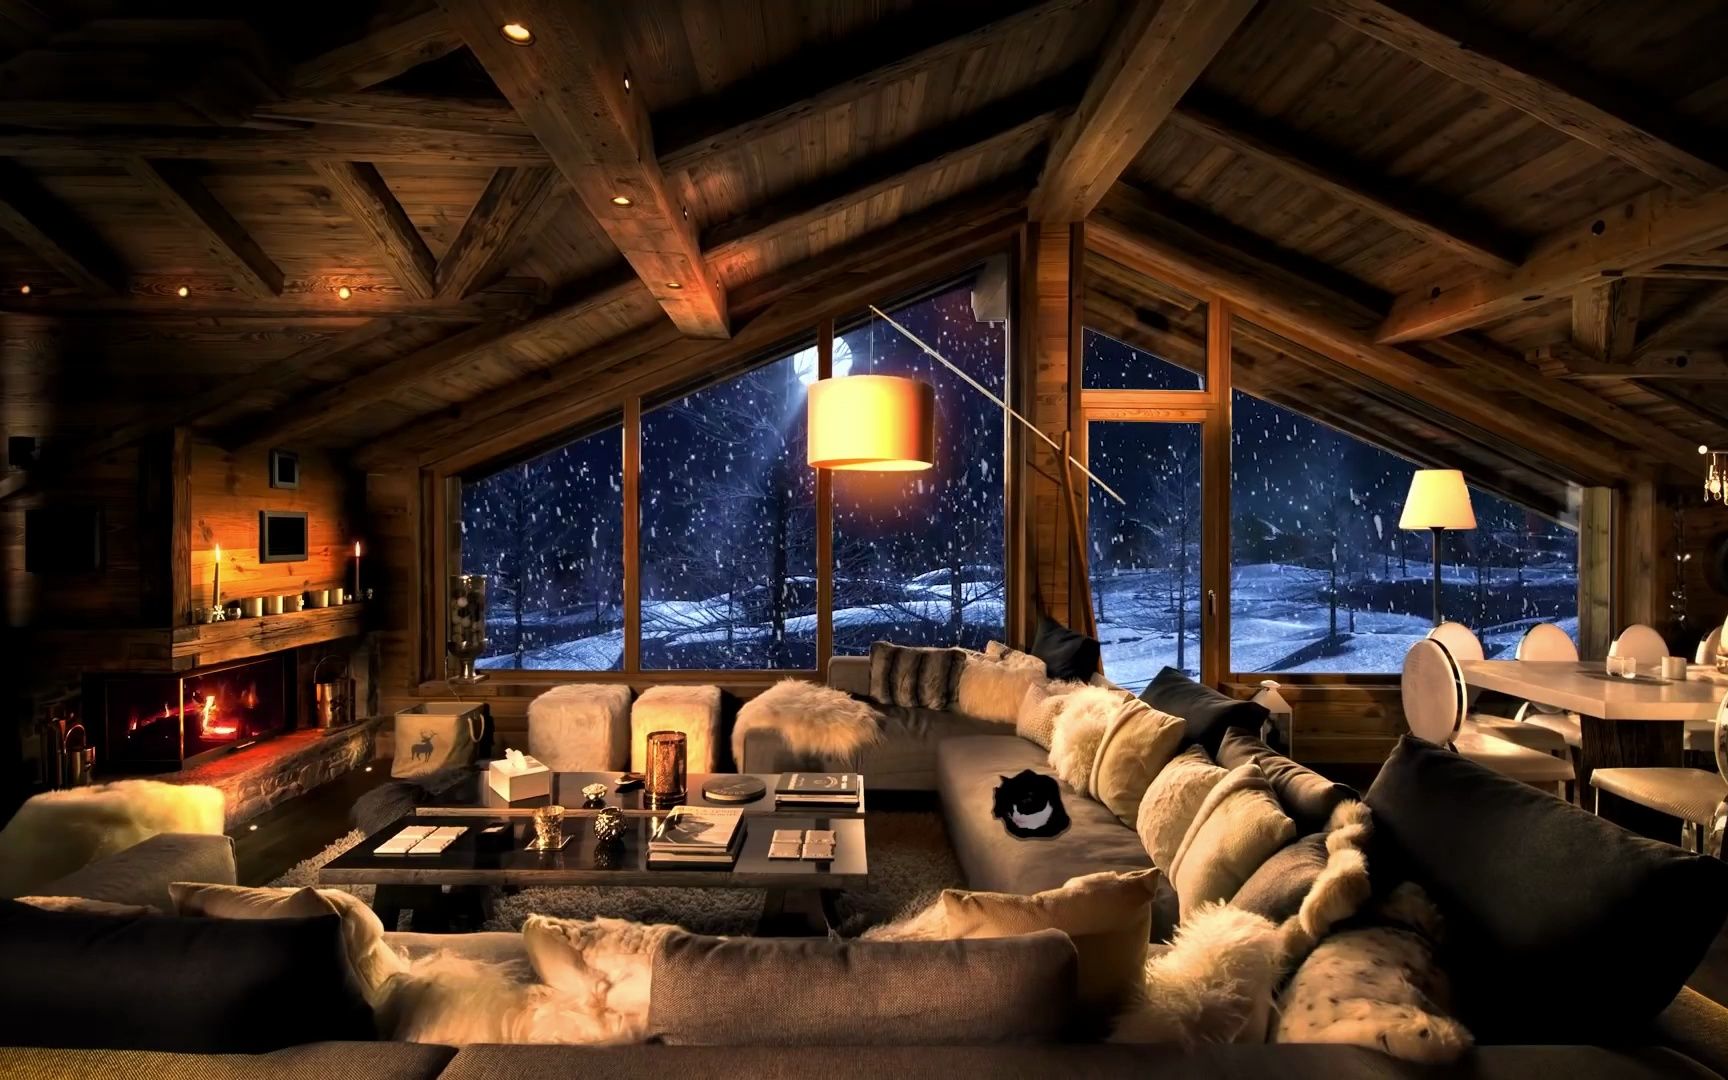 木屋雪景壁炉图片